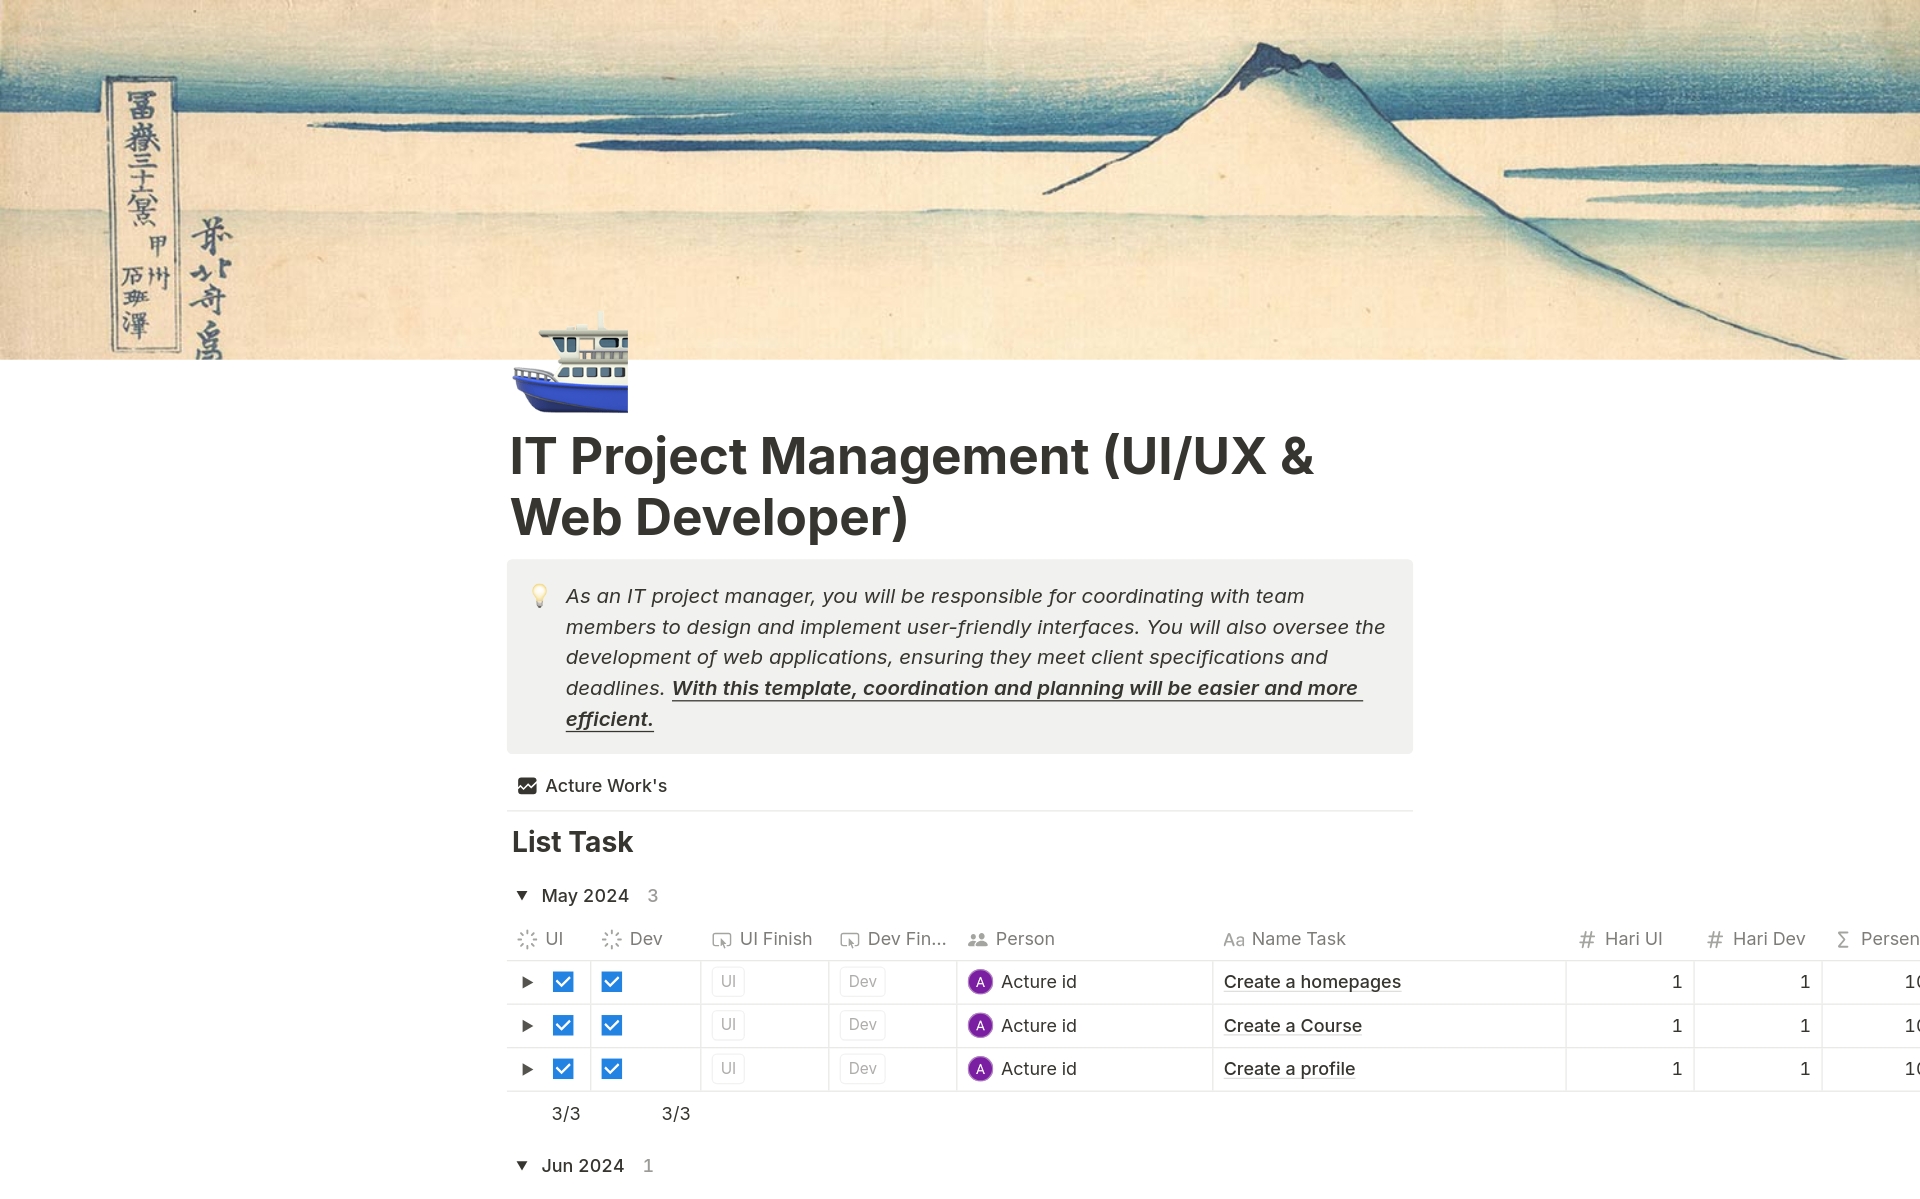 Uma prévia do modelo para IT Project Manager (UI/UX dan Web Developer)